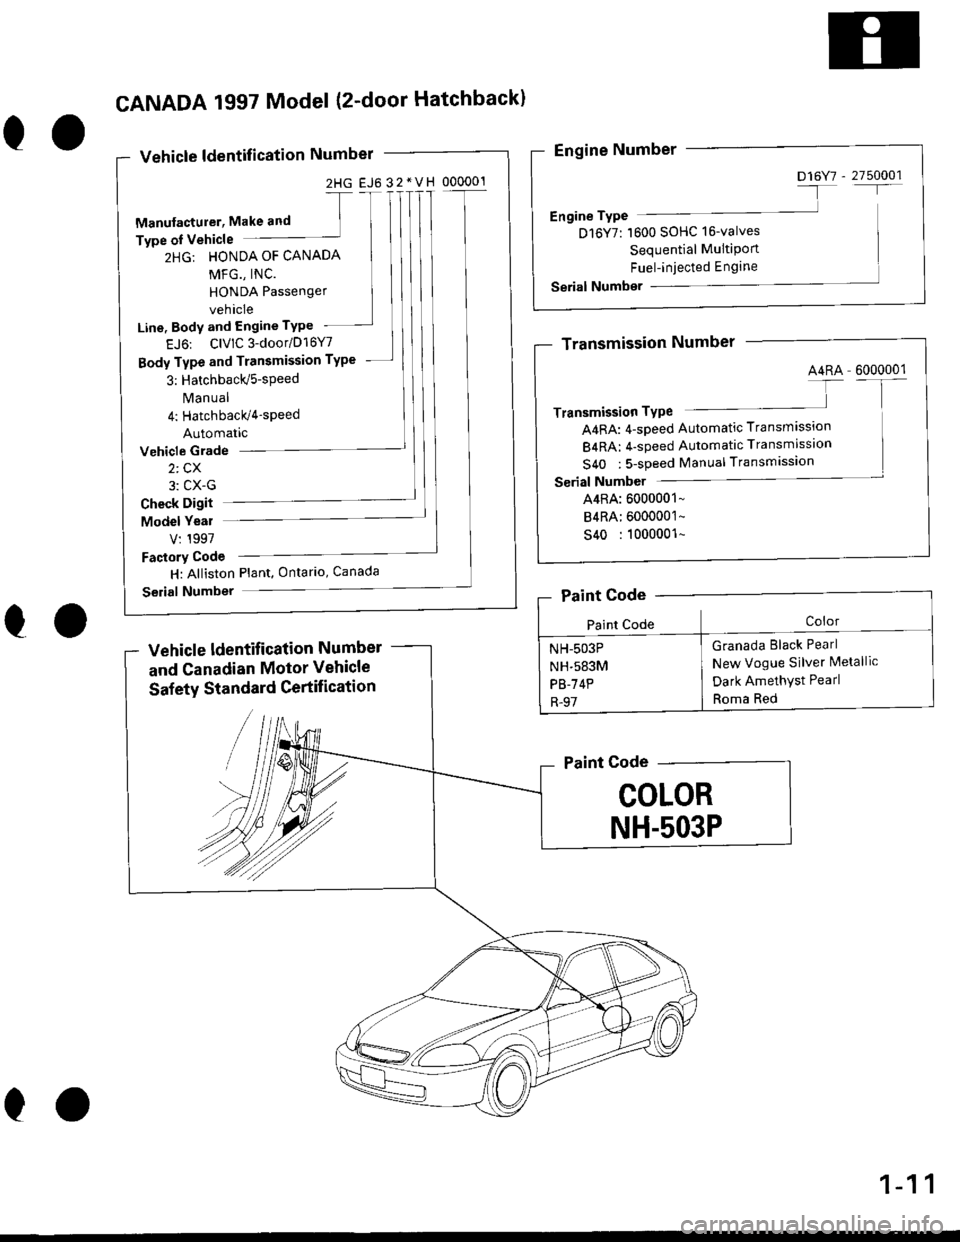 HONDA CIVIC 1996 6.G Workshop Manual 2HG EJ6 32*VH 000001
eo
CANADA 1997 Model (2-door Hatchbackl
Vehicle ldentification Number
-[
Manufacturer, Make and ]Type oI Vehicle
2HG: HONDA OF CANADA
MFG., INC.
HONDA Passenger
vehicle
Line, Body